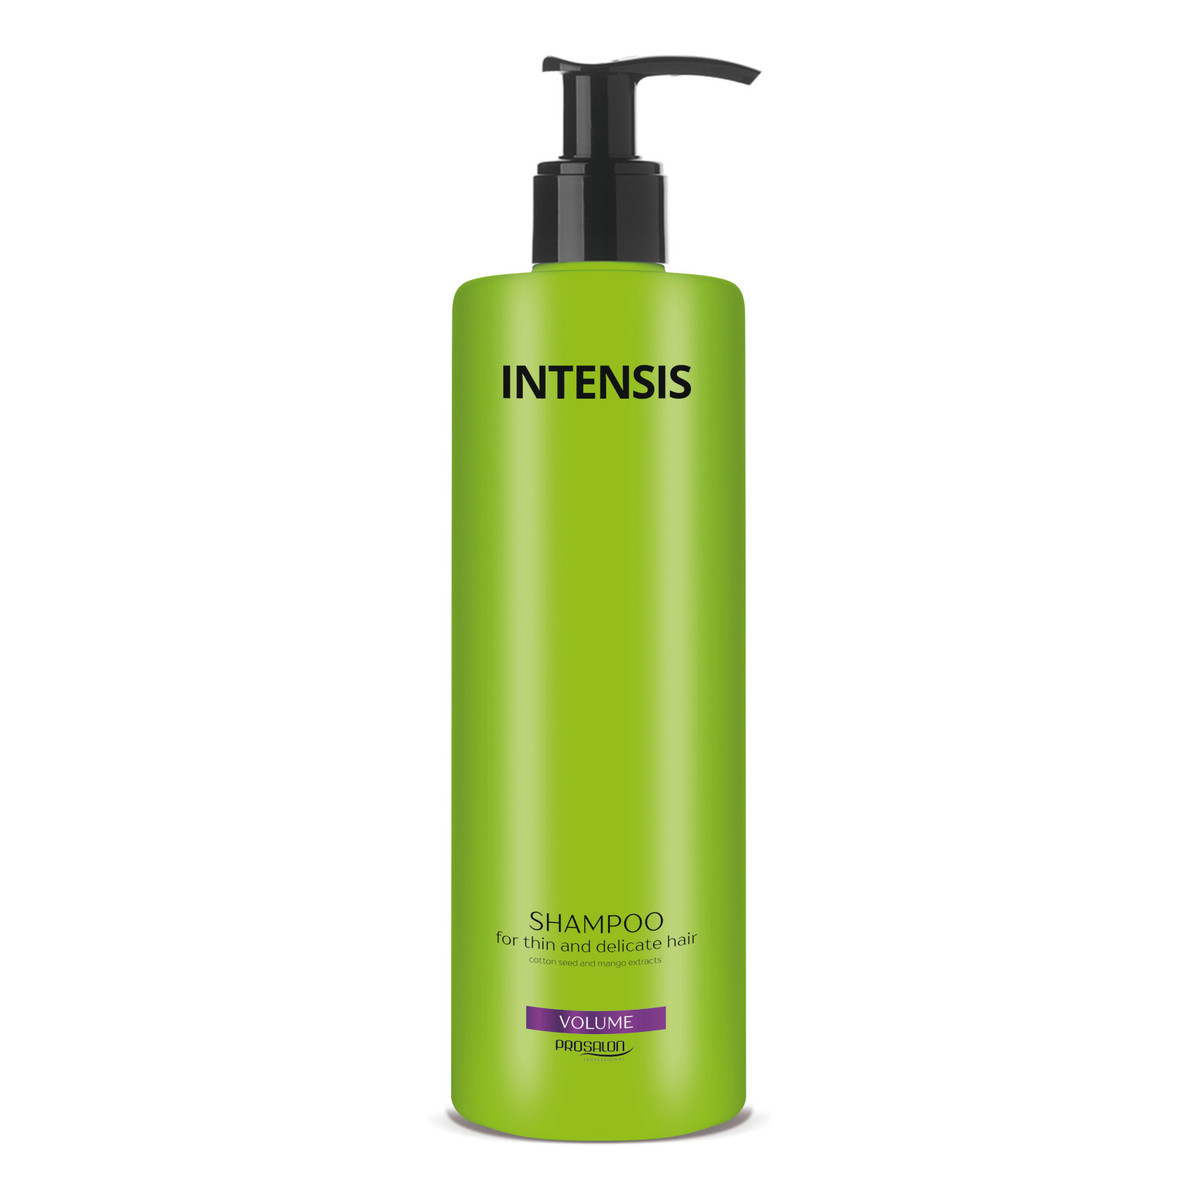 Intensis Prosalon shampoo for thin and delicate hair szampon zwiększający objętość 1000g 1000g